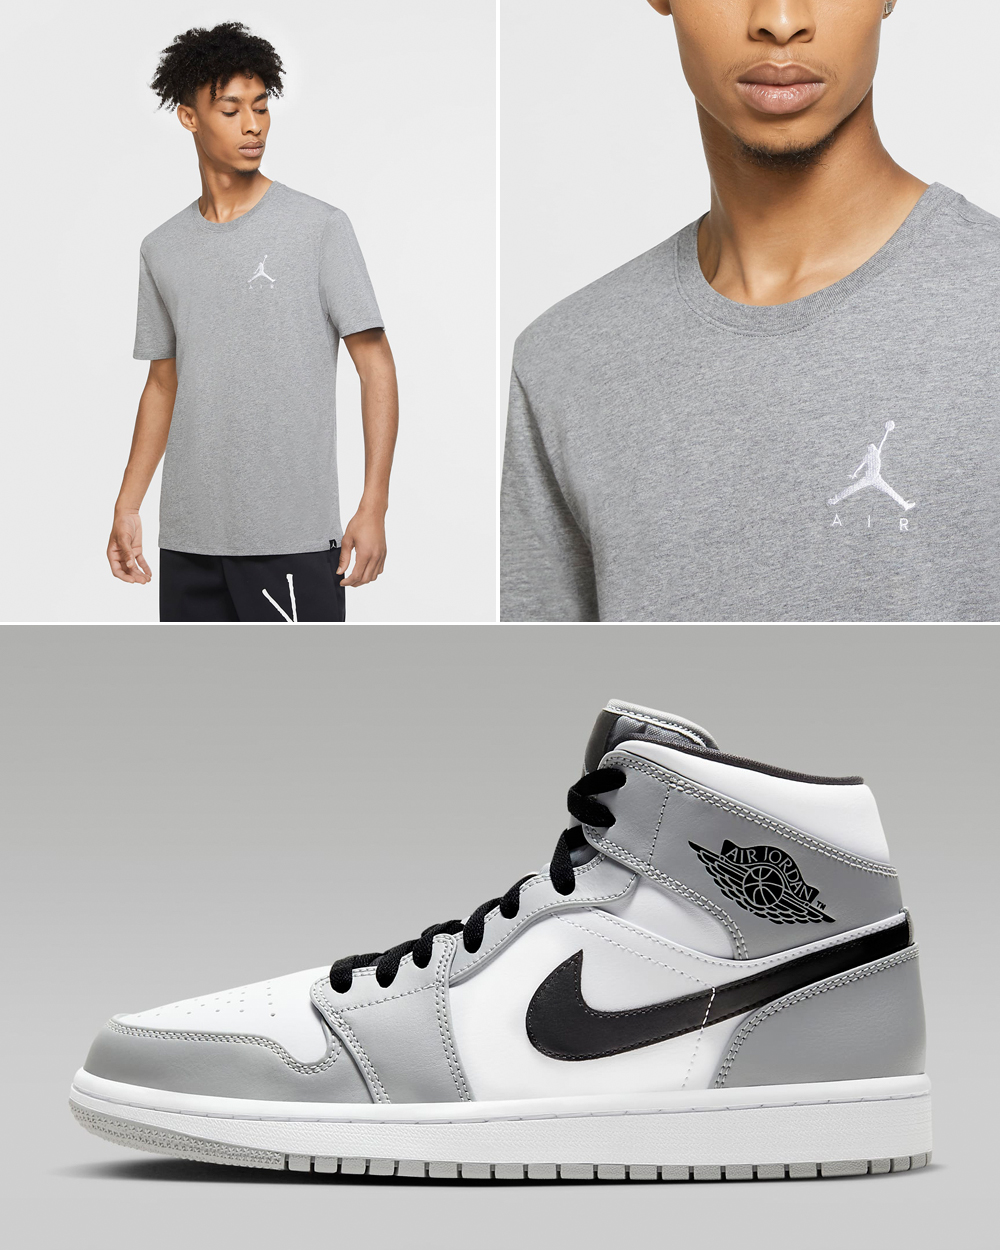 Air-Jordan-1-Mid-Light-Smoke-Grey-Shirt-Outfit